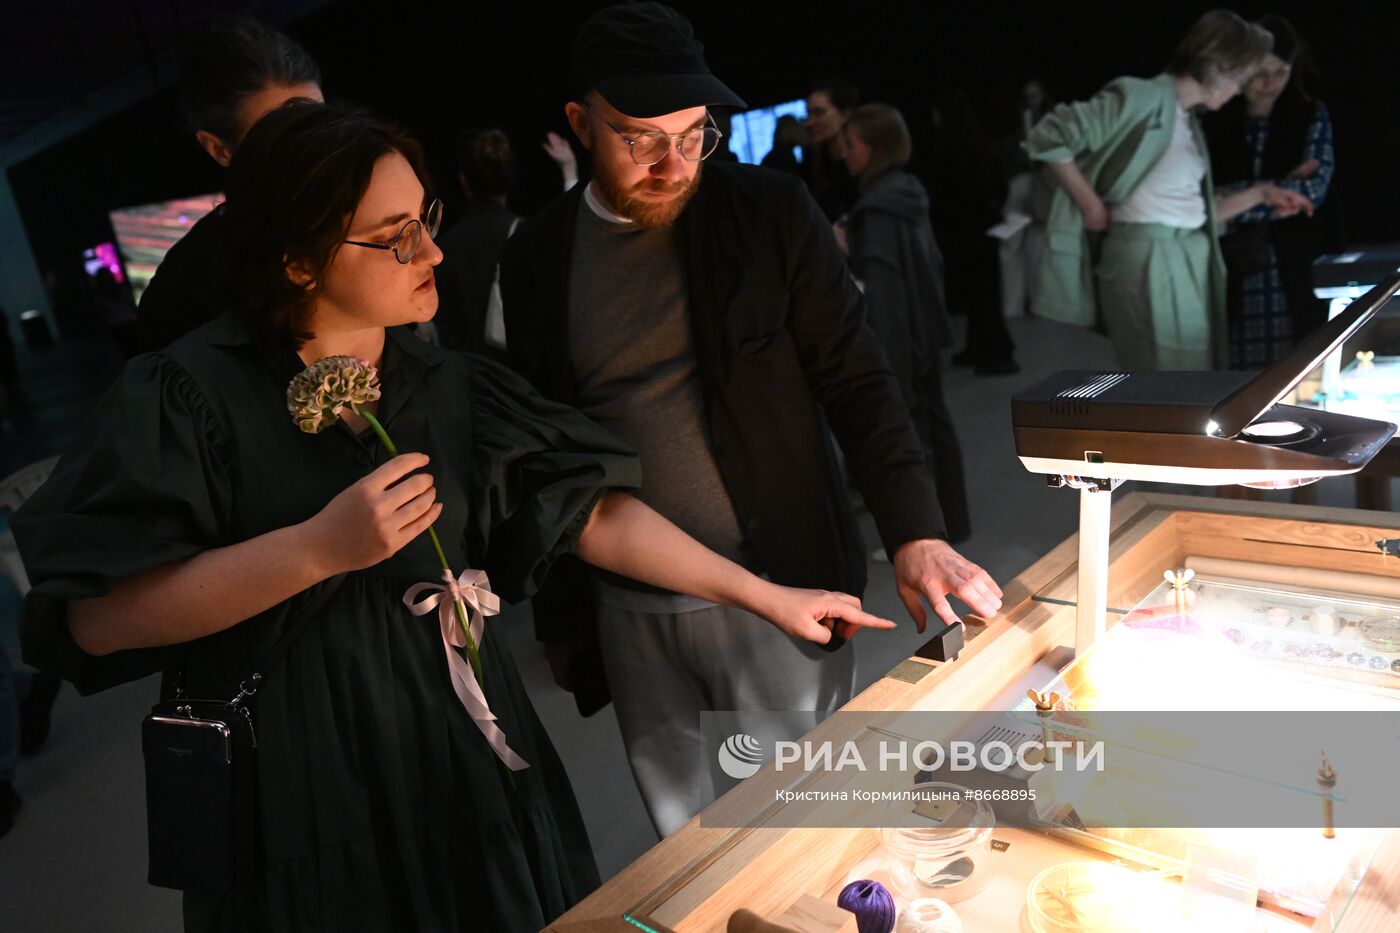 Открытие новых выставок в Доме культуры "ГЭС-2"